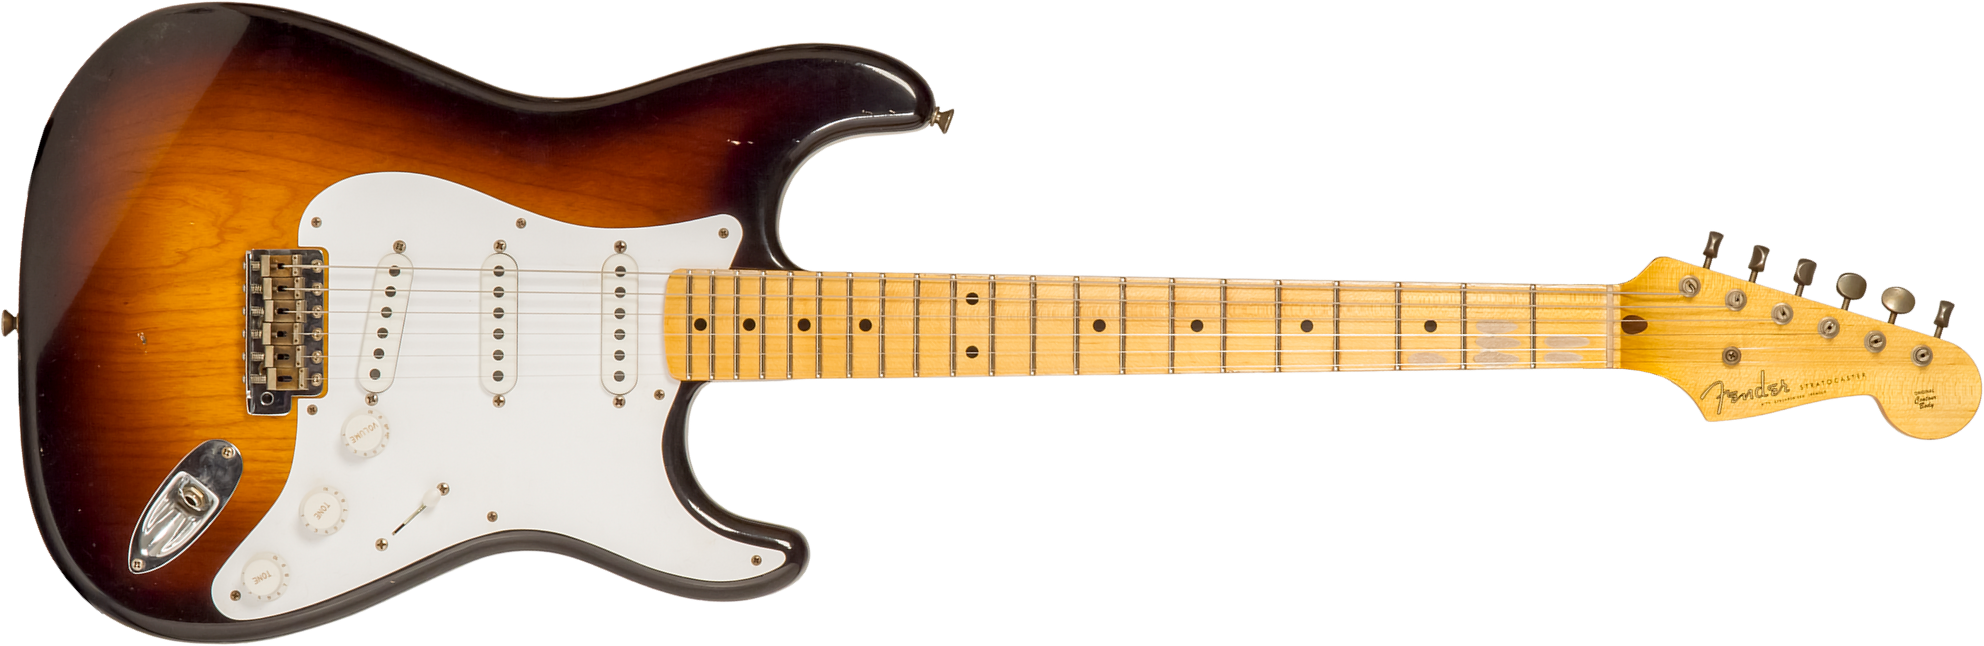 Fender Custom Shop Strat 1954 70th Anniv. 3s Trem Mn #xn4199 - Journeyman Relic Wide-fade 2-color Sunburst - Guitare Électrique Forme Str - Main pictu